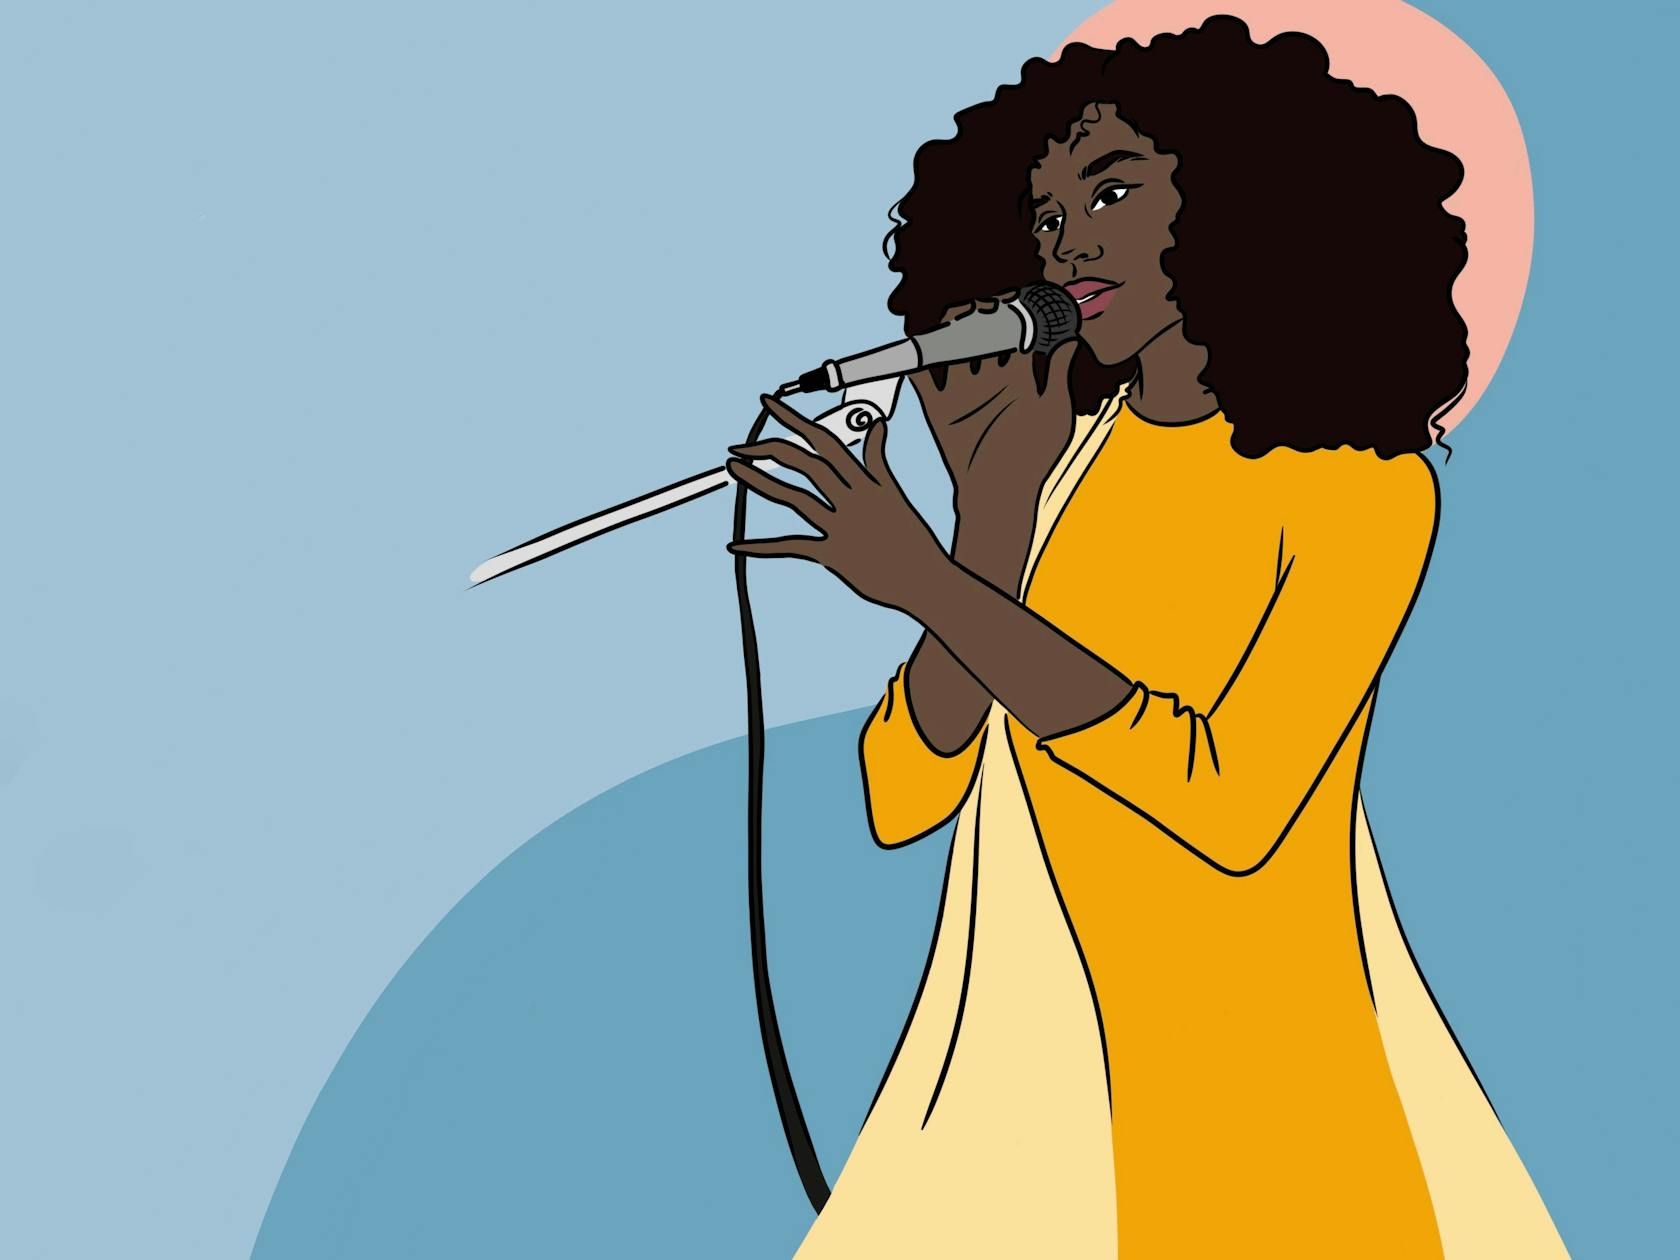 Die Abbildung zeigt eine Zeichnung einer Schwarzen Frau mit einem Mikrofon in der Hand.

